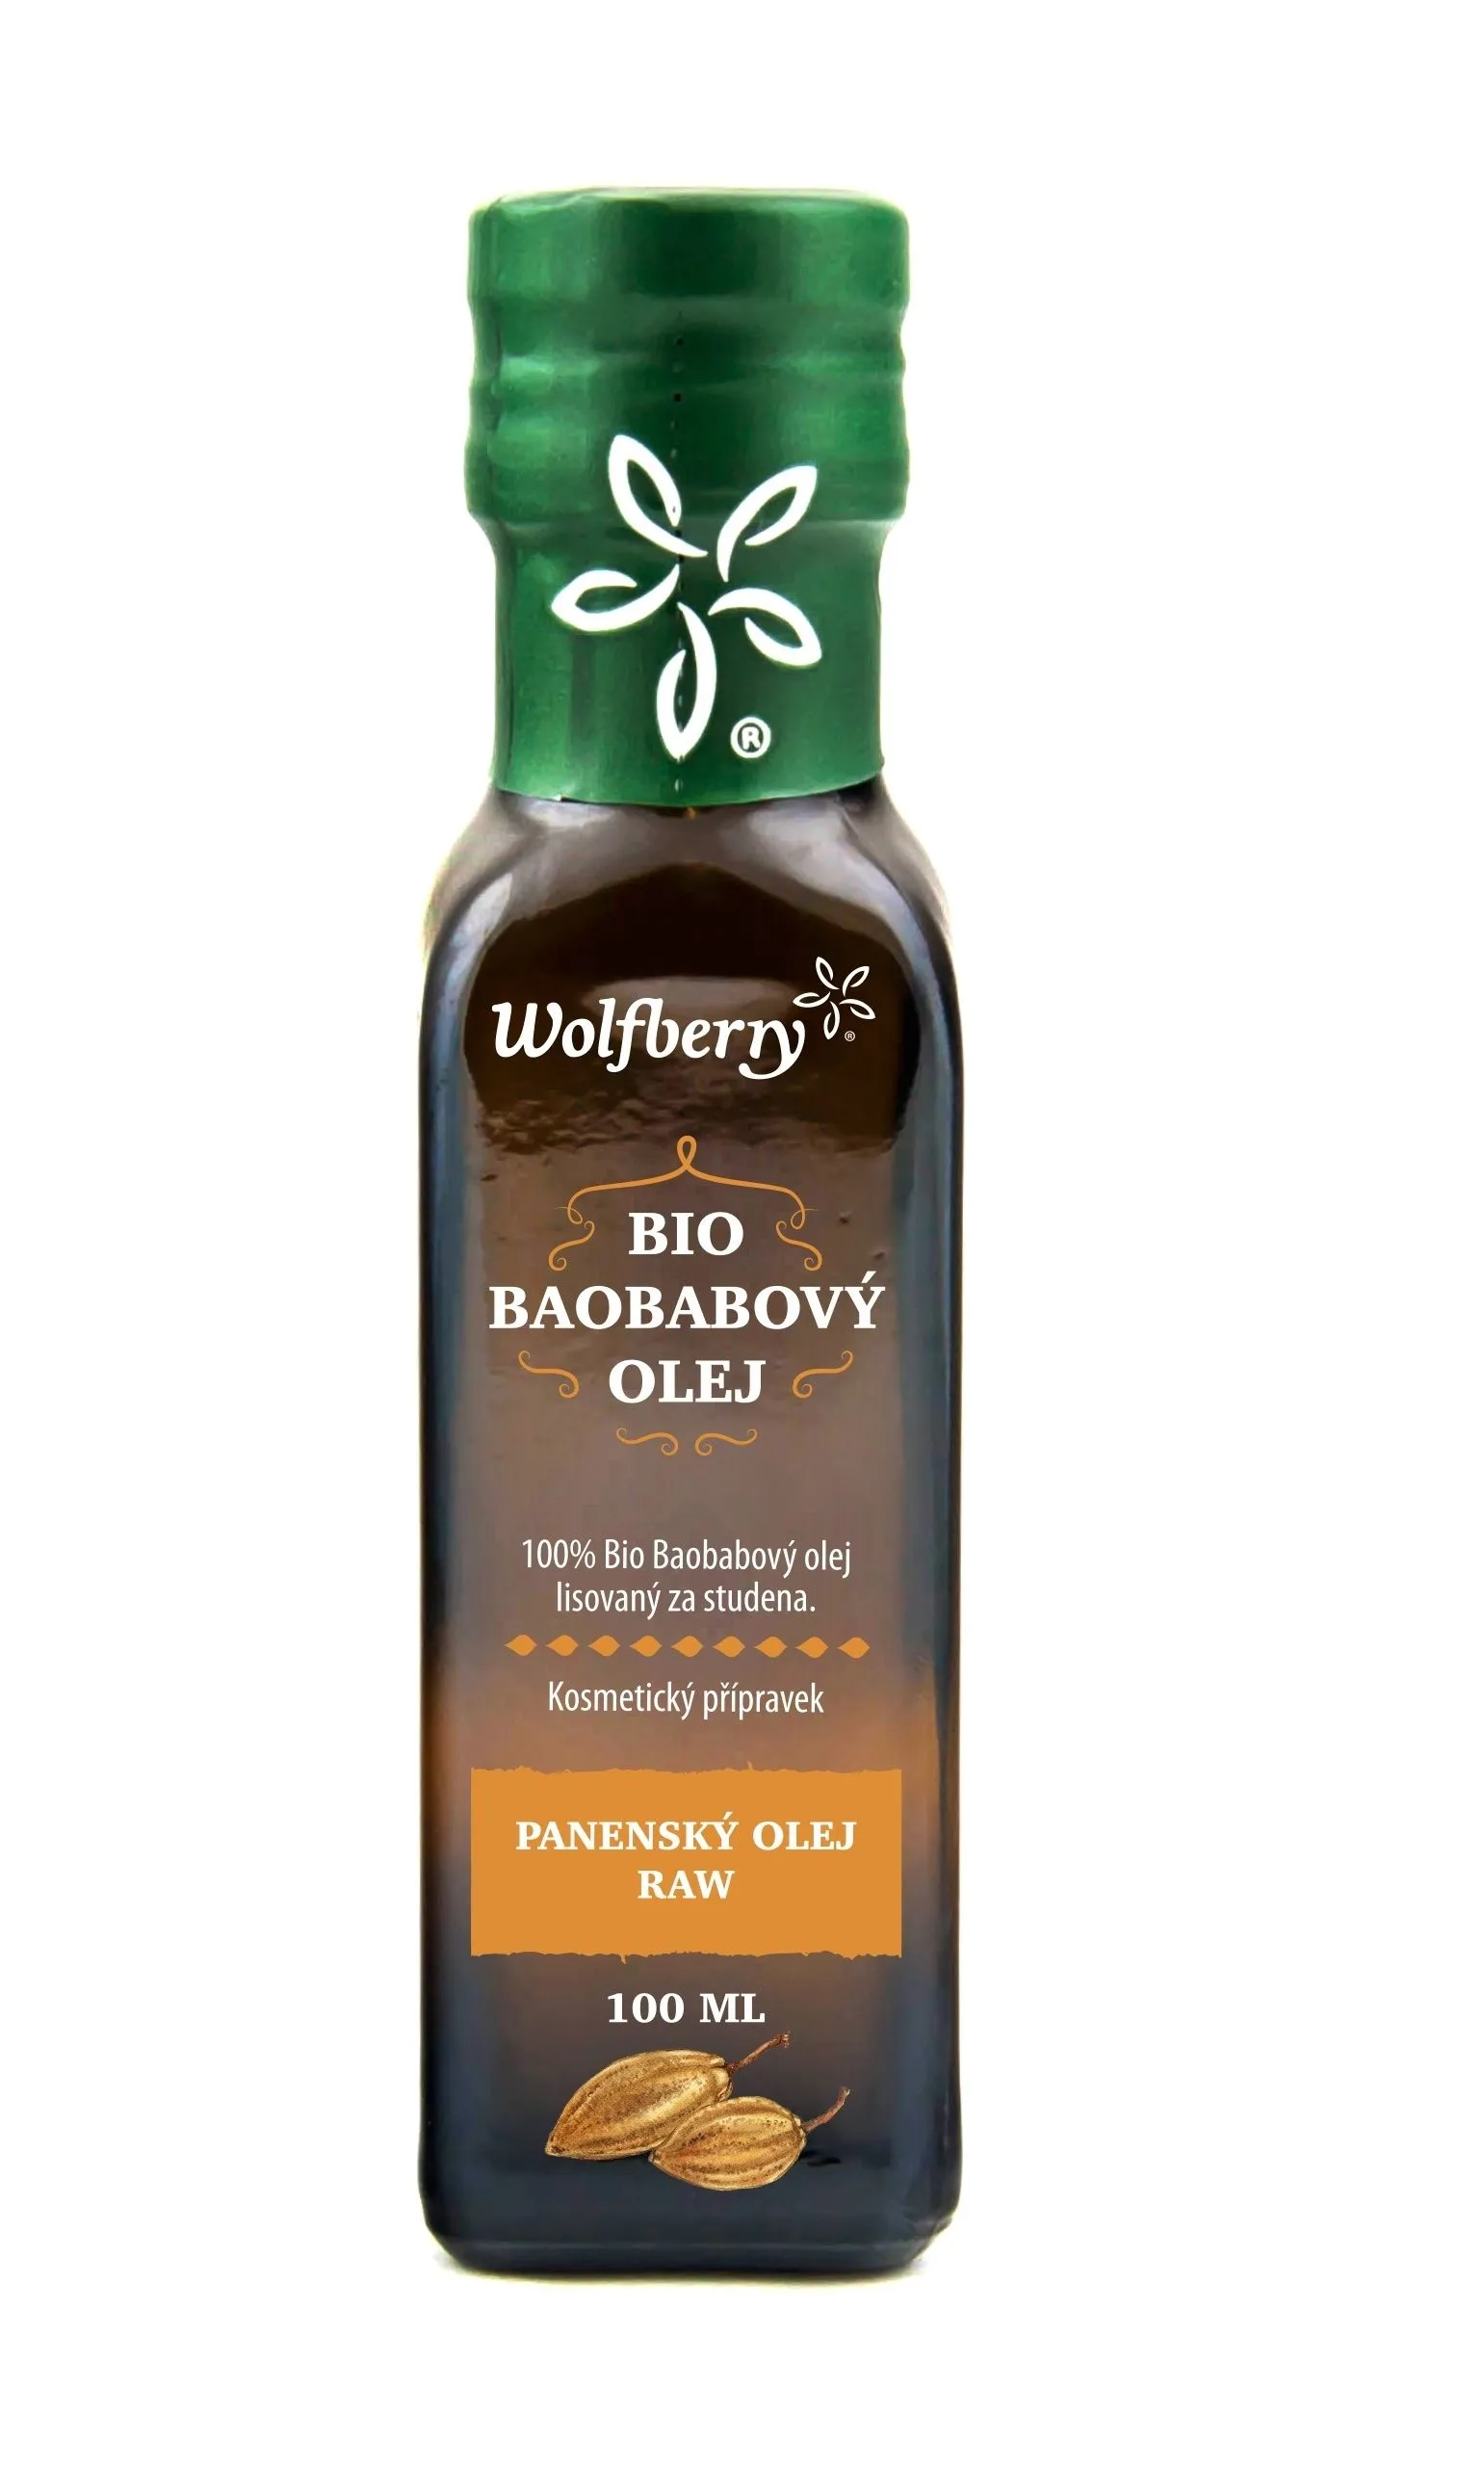 Wolfberry Baobabový olej BIO 100 ml